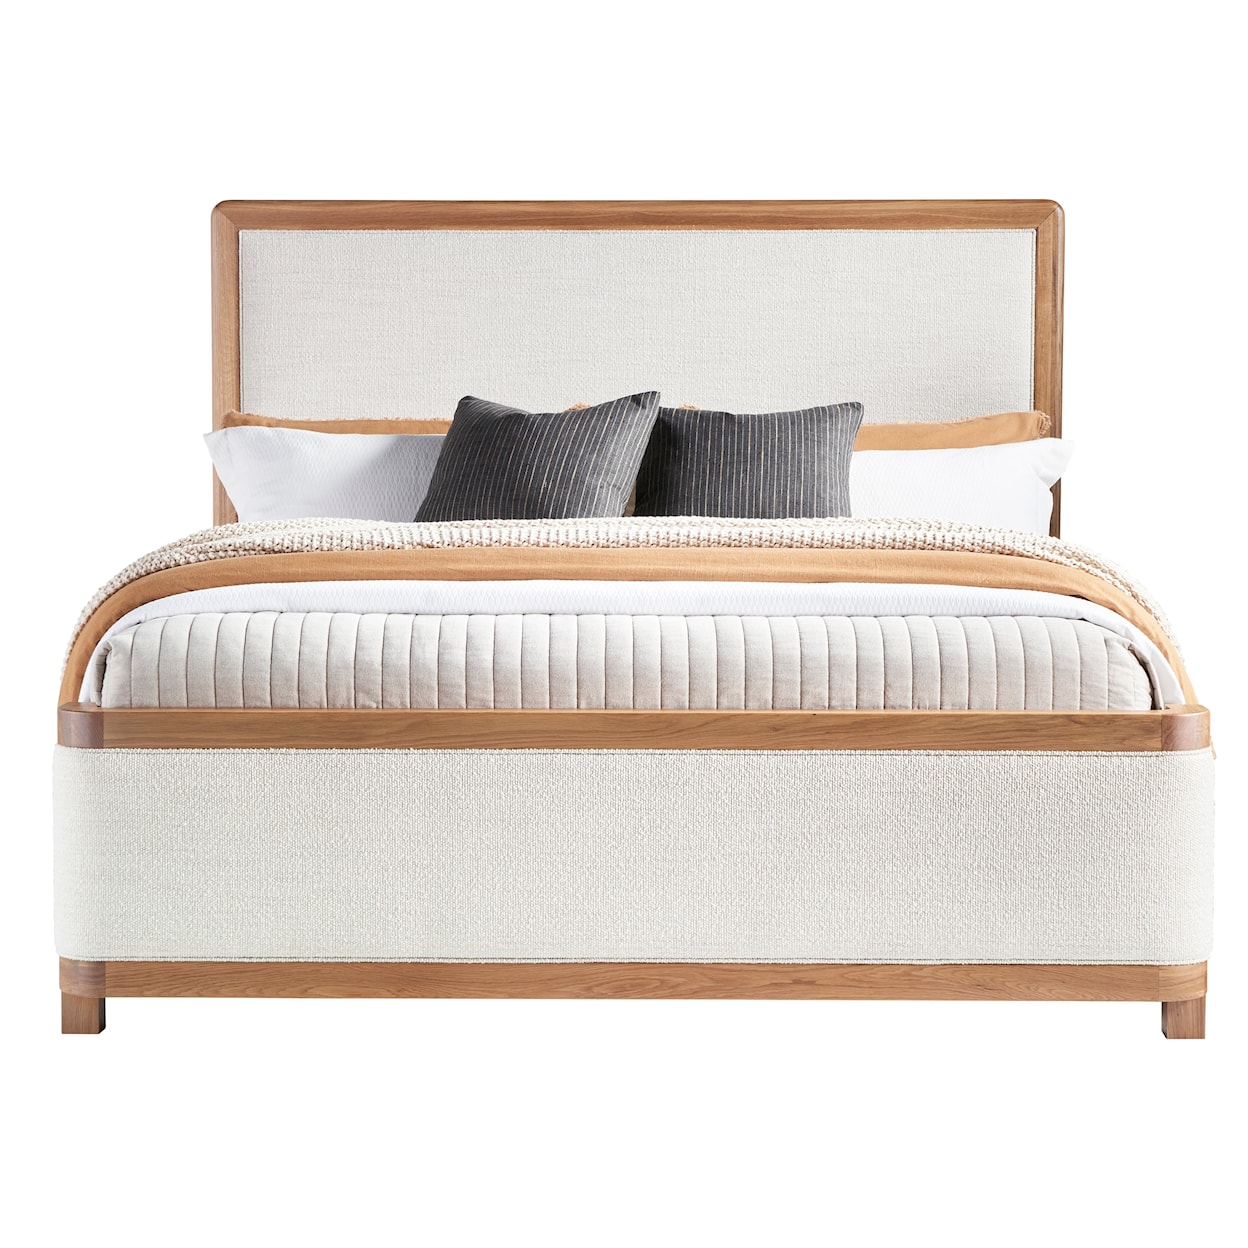 Vanguard Furniture Form Queen Bed